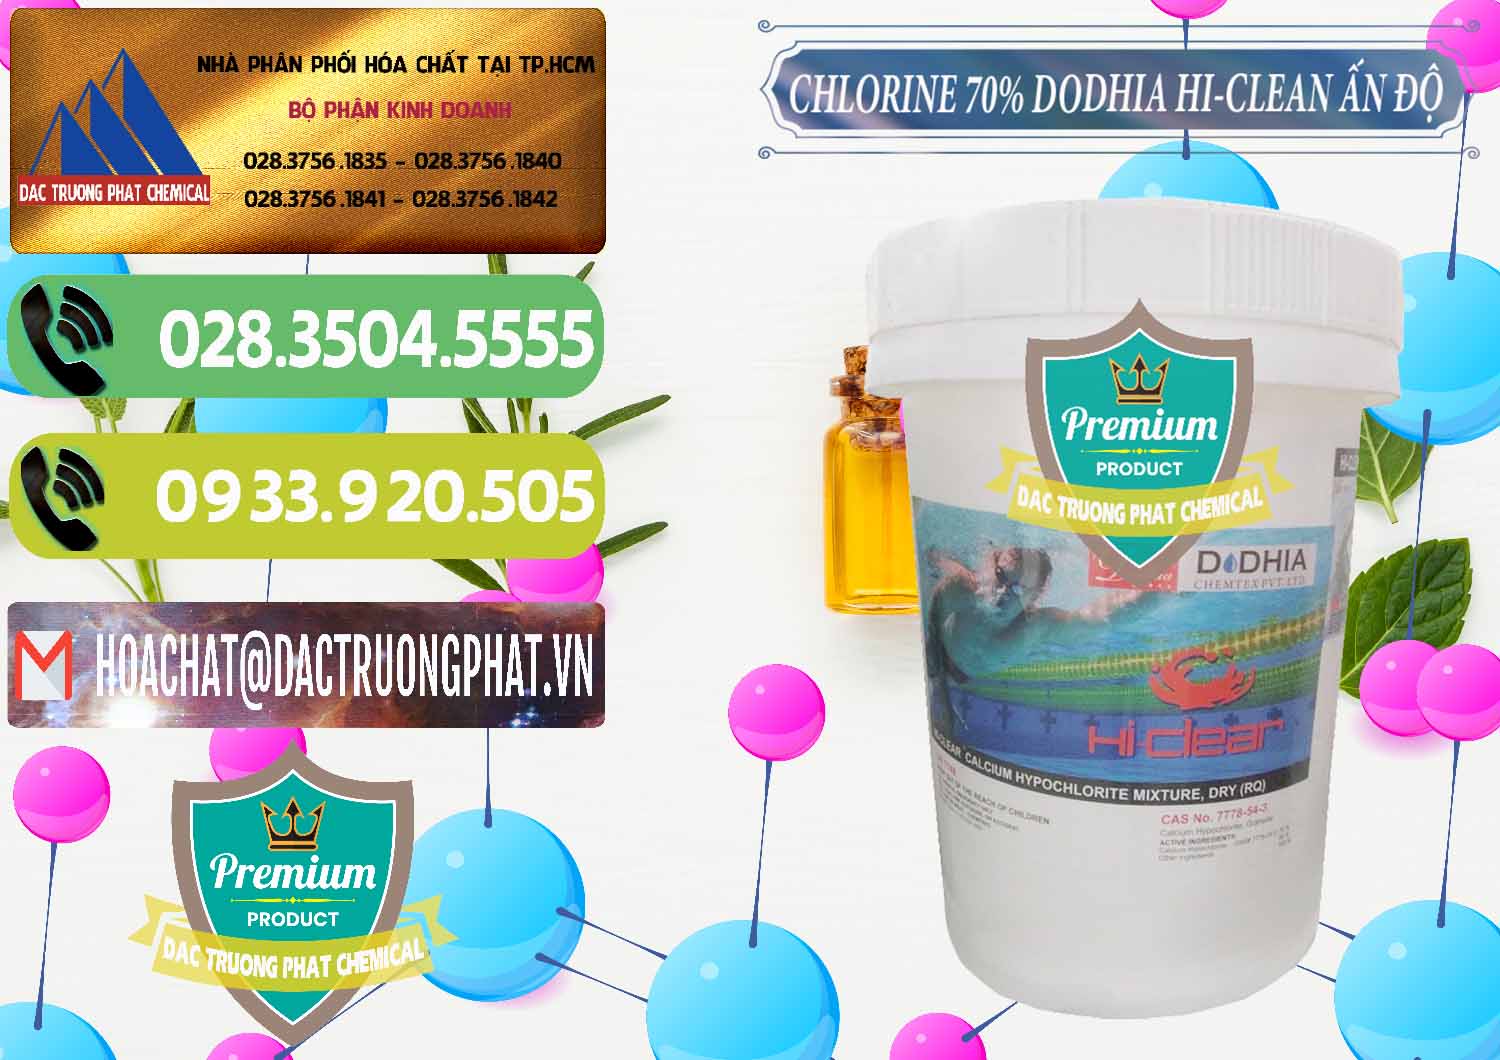 Nơi chuyên cung ứng và bán Chlorine – Clorin 70% Dodhia Hi-Clean Ấn Độ India - 0214 - Nơi phân phối & bán hóa chất tại TP.HCM - hoachatmientay.vn